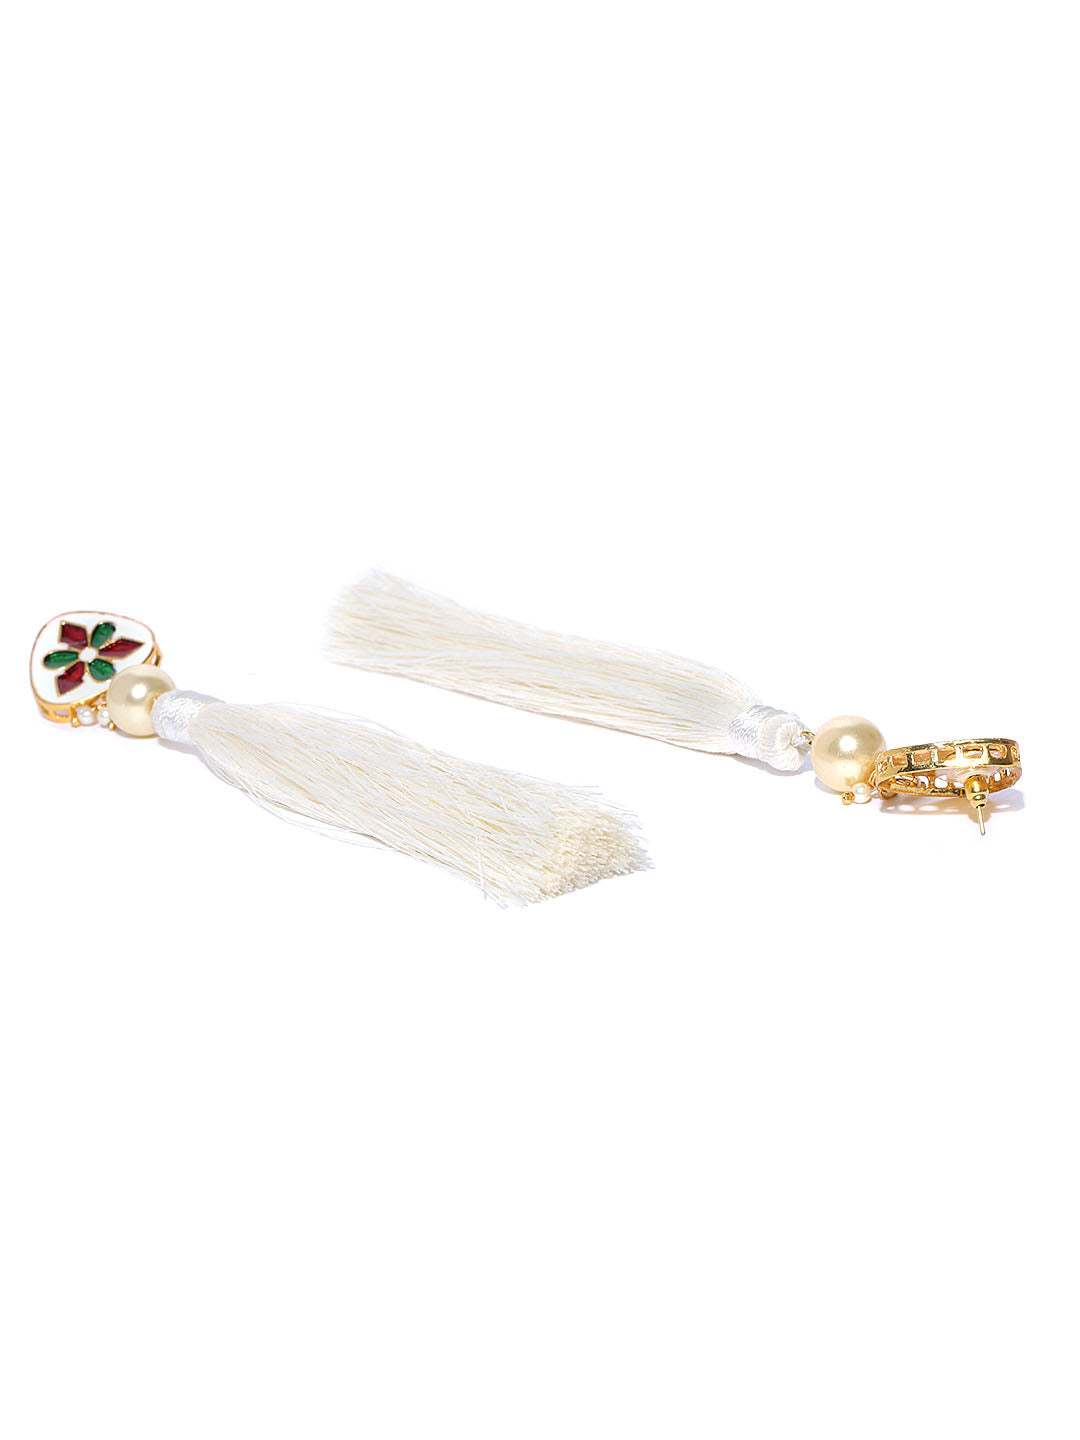 White Long Tasseled Earrings for Women & Girls